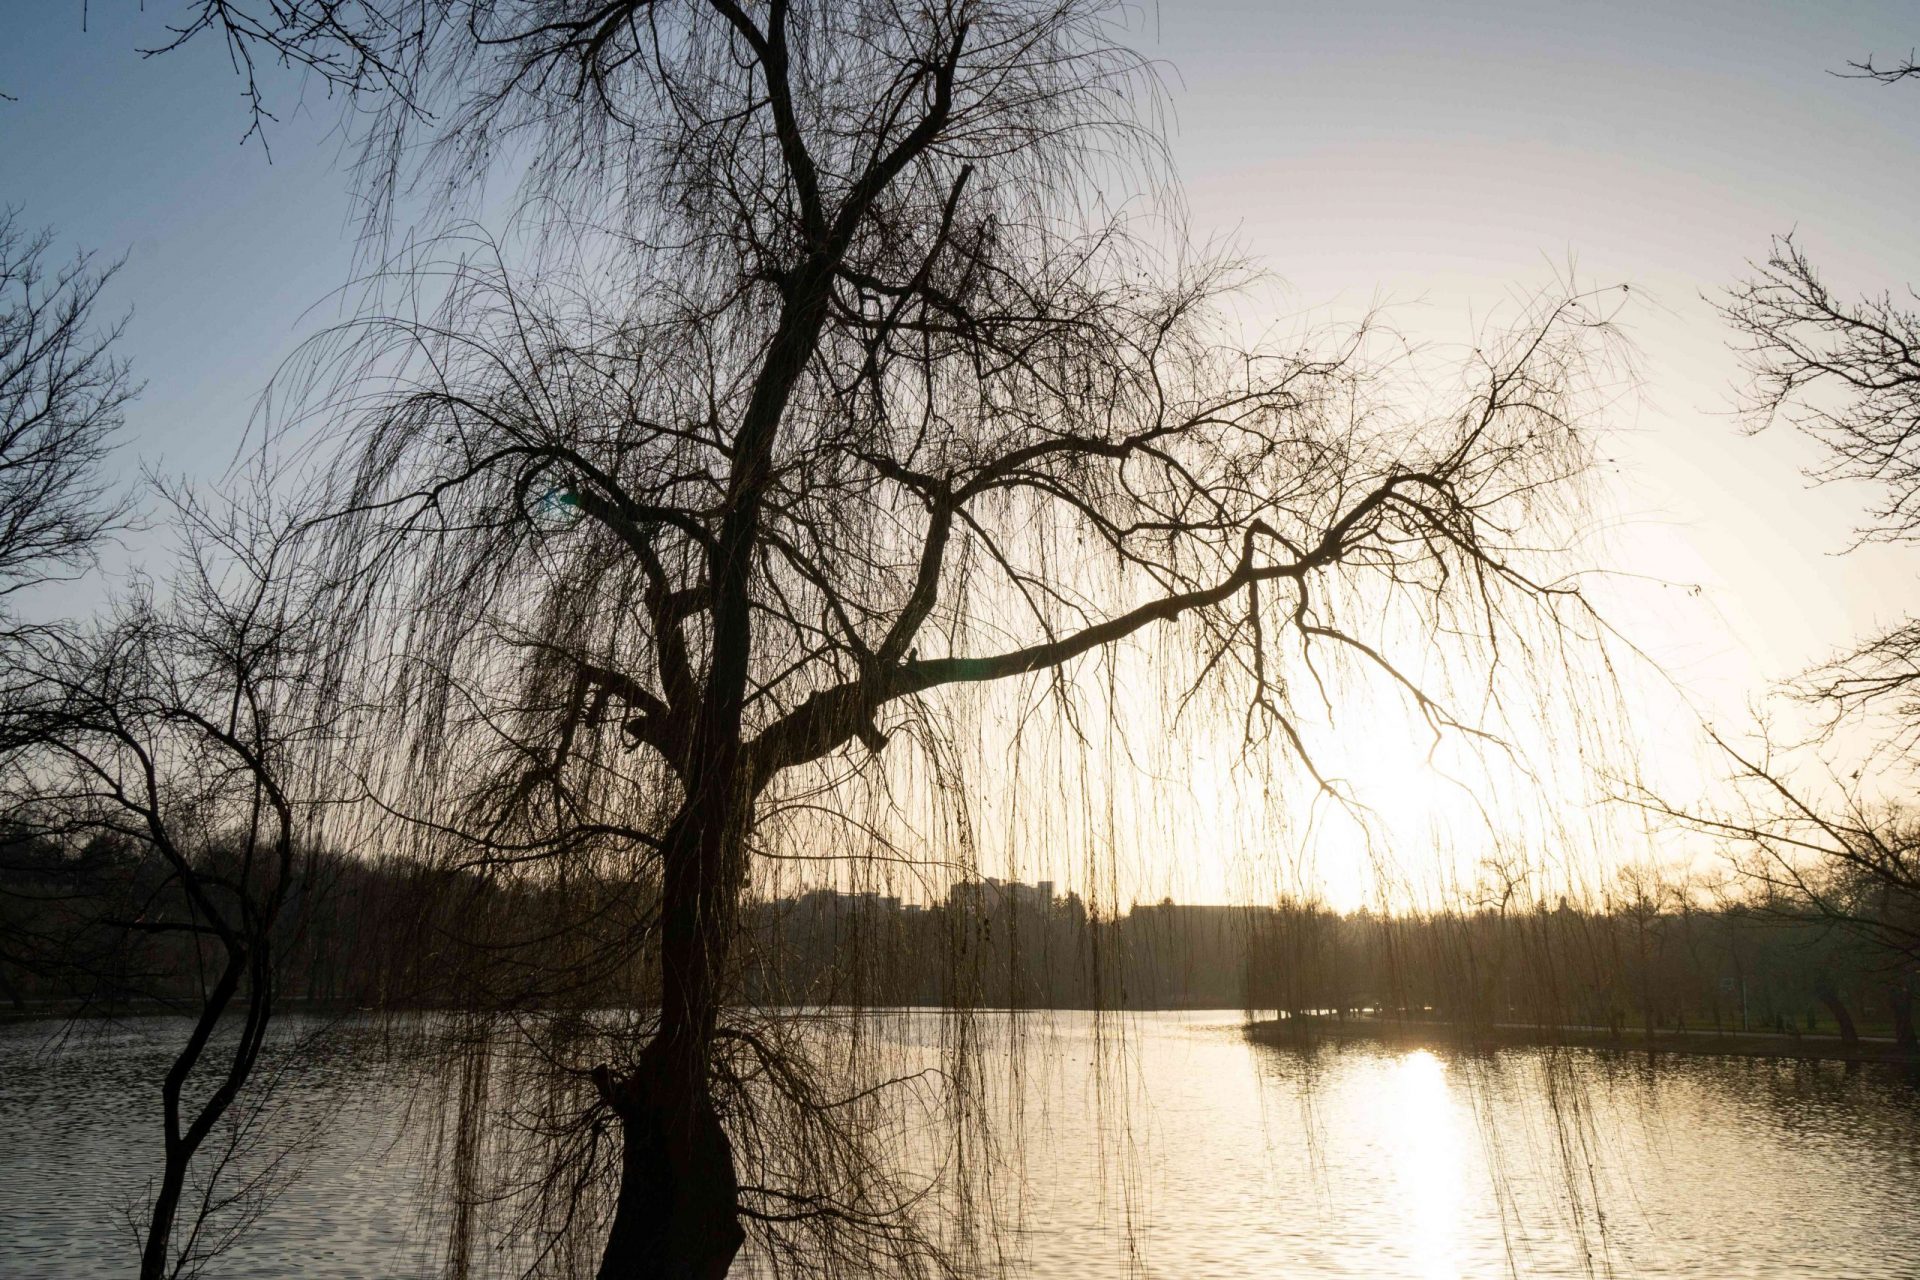 gran árbol estéril al atardecer durante el invierno con vistas a una masa de agua